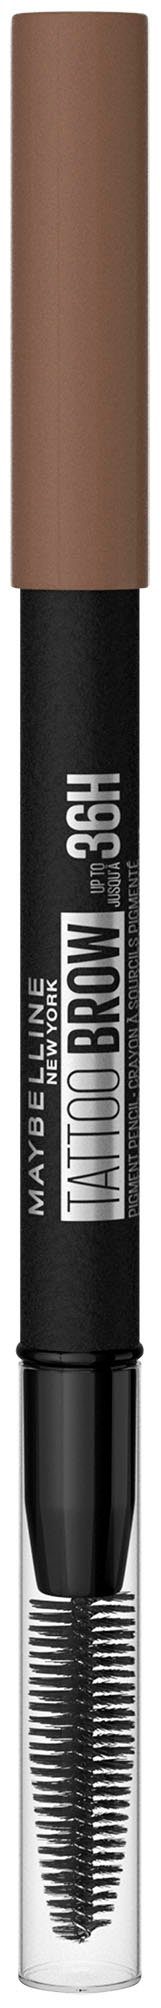 MAYBELLINE NEW YORK Augen-Make-Up Brow Ash wasserfeste Bürste, mit 36H, Formel, Brown 6 Tattoo Augenbrauen-Stift